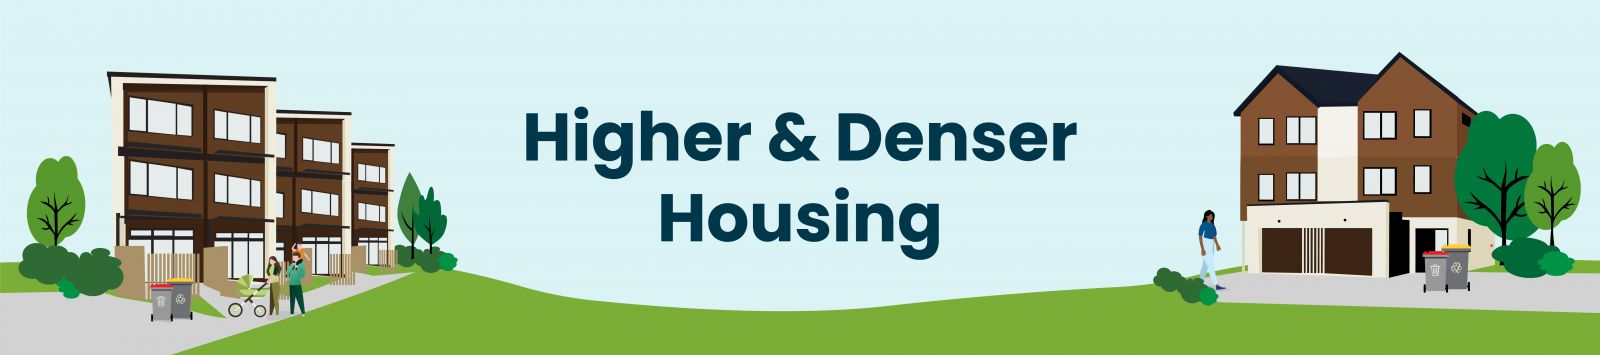 higher denser housing 2 banner image